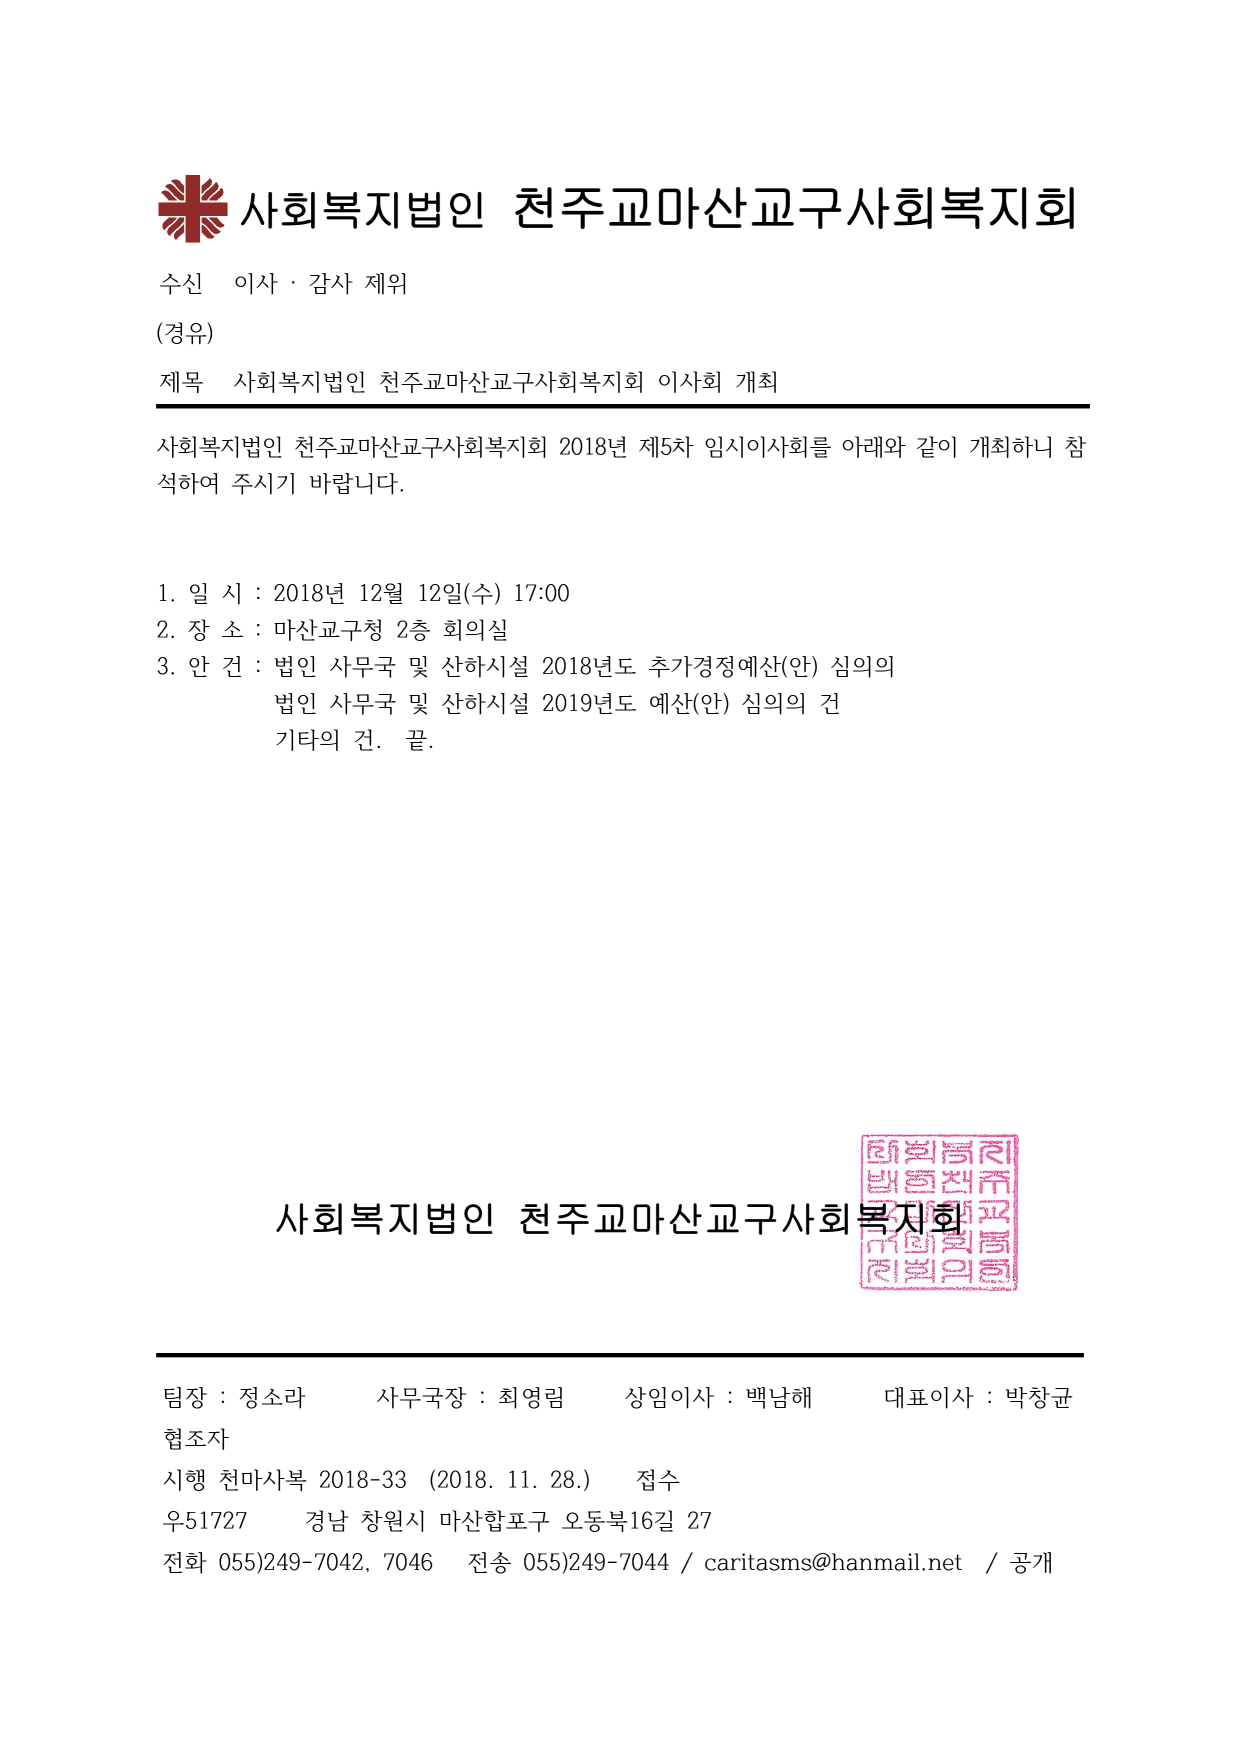 천마사복2018-33(5차 임시이사회 개최)_1.png